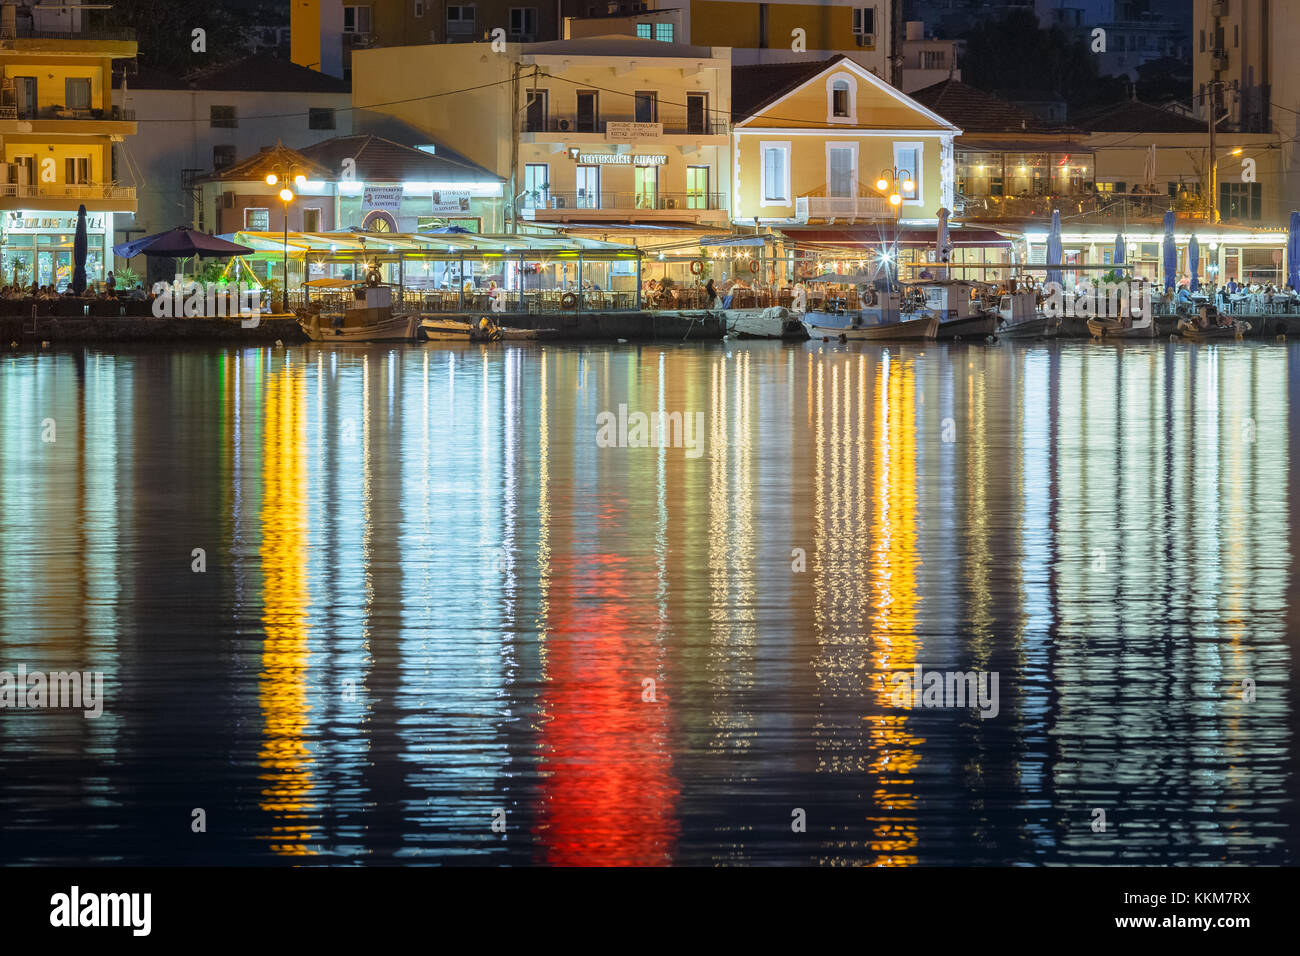 Foto Panorámica de la ciudad de Mitilene en la isla de Lesbos, Grecia en la tarde. mitilene es la capital y el puerto de la isla de Lesbos. Foto de stock